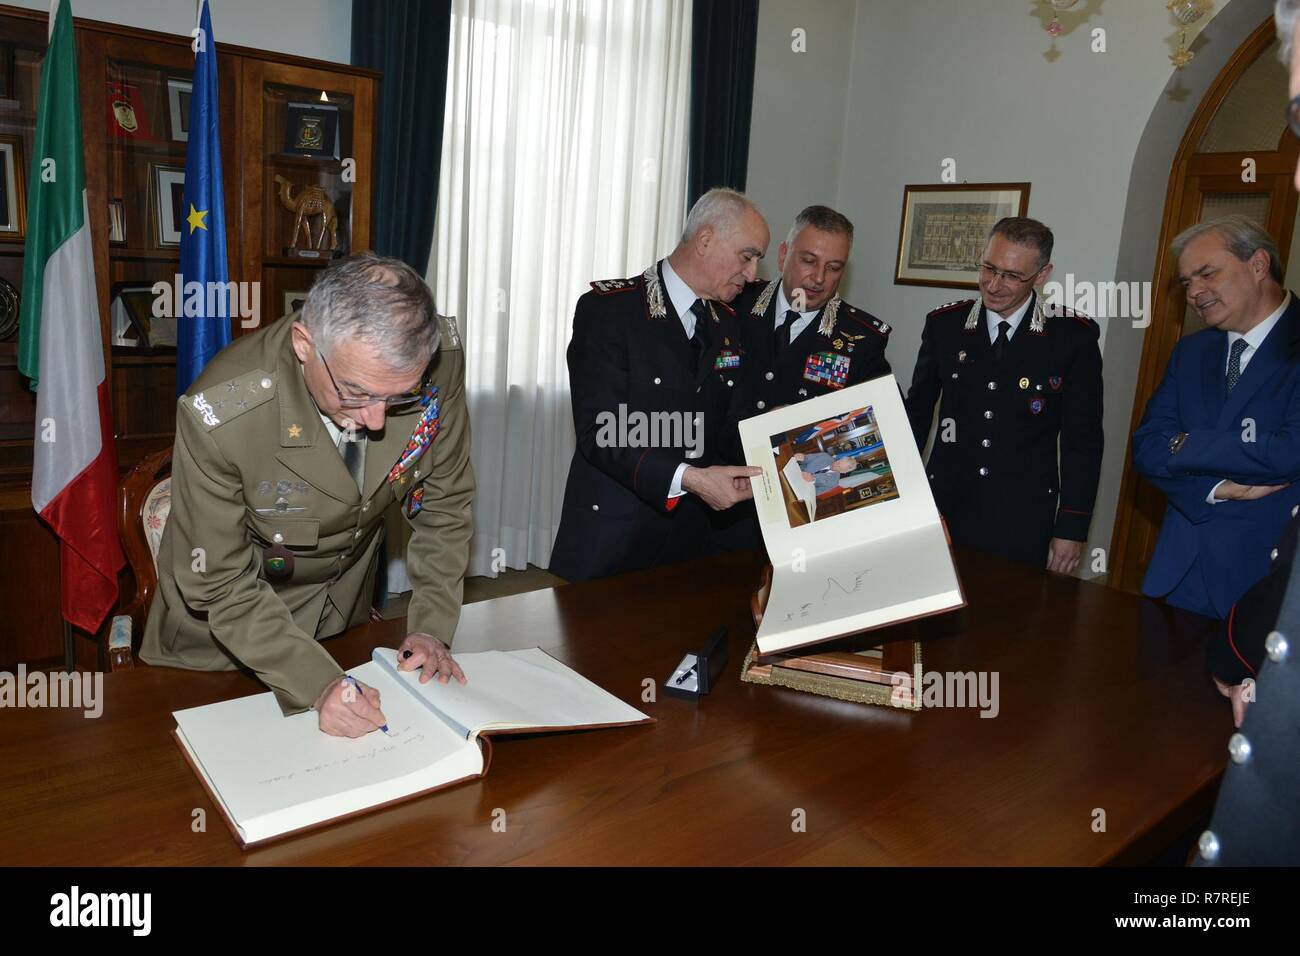 Le Général Claudio Graziano, chef d'état-major de l'armée italienne, signe le livre d'invité d'honneur, pendant une visite au Centre d'excellence pour les unités de police de stabilité (COESPU) Vicenza, Italie, le 1 avril 2017. Banque D'Images